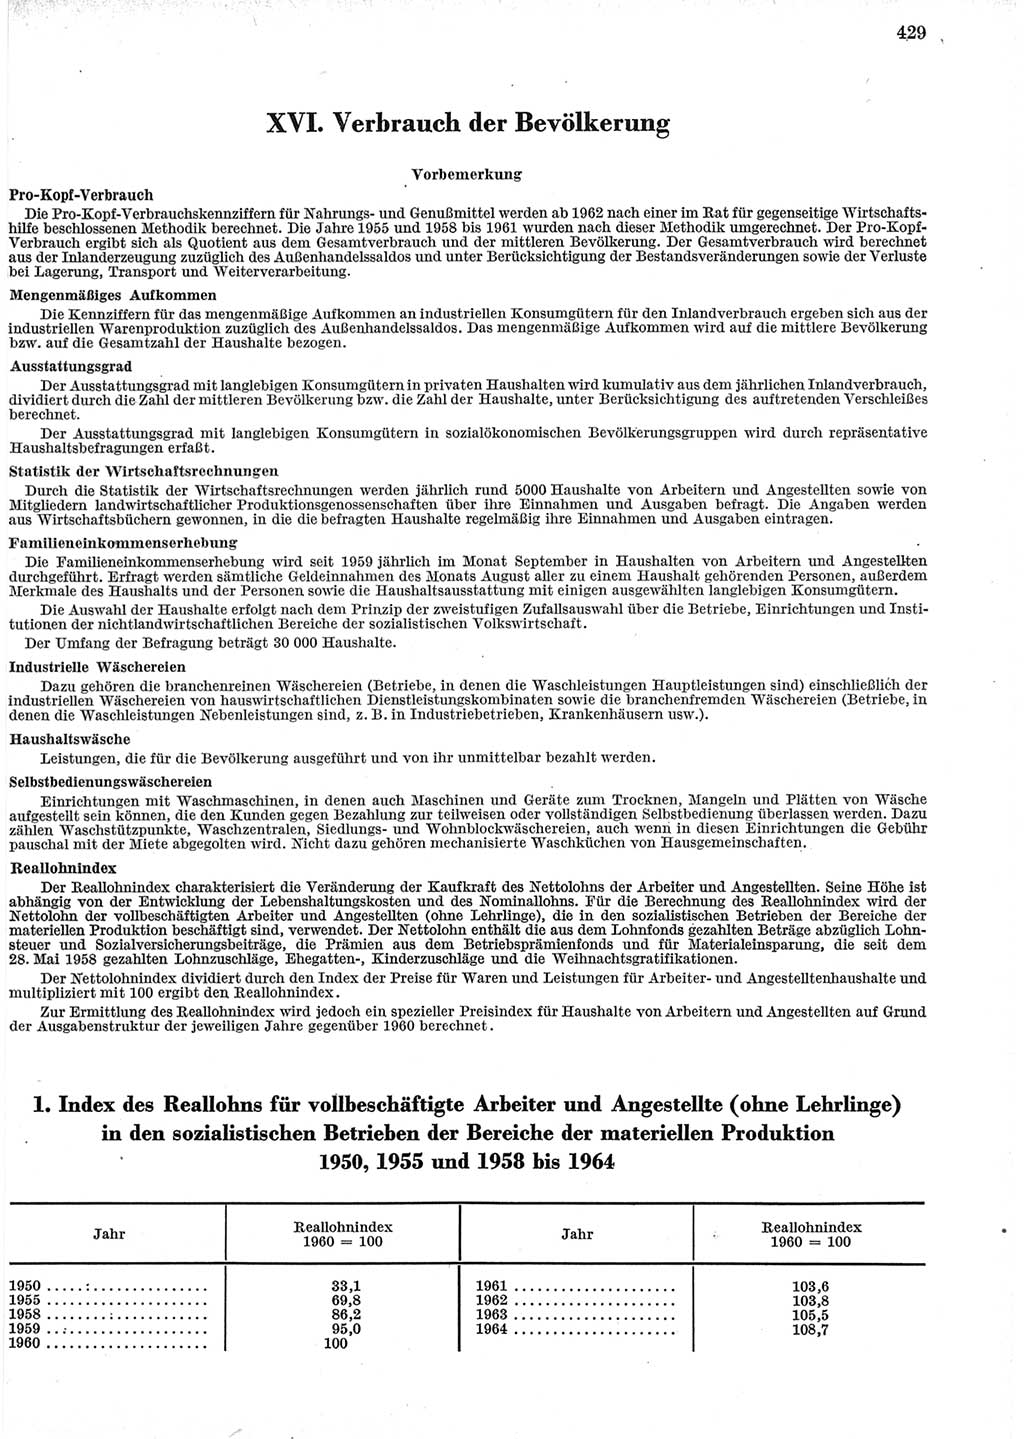 Statistisches Jahrbuch der Deutschen Demokratischen Republik (DDR) 1965, Seite 429 (Stat. Jb. DDR 1965, S. 429)